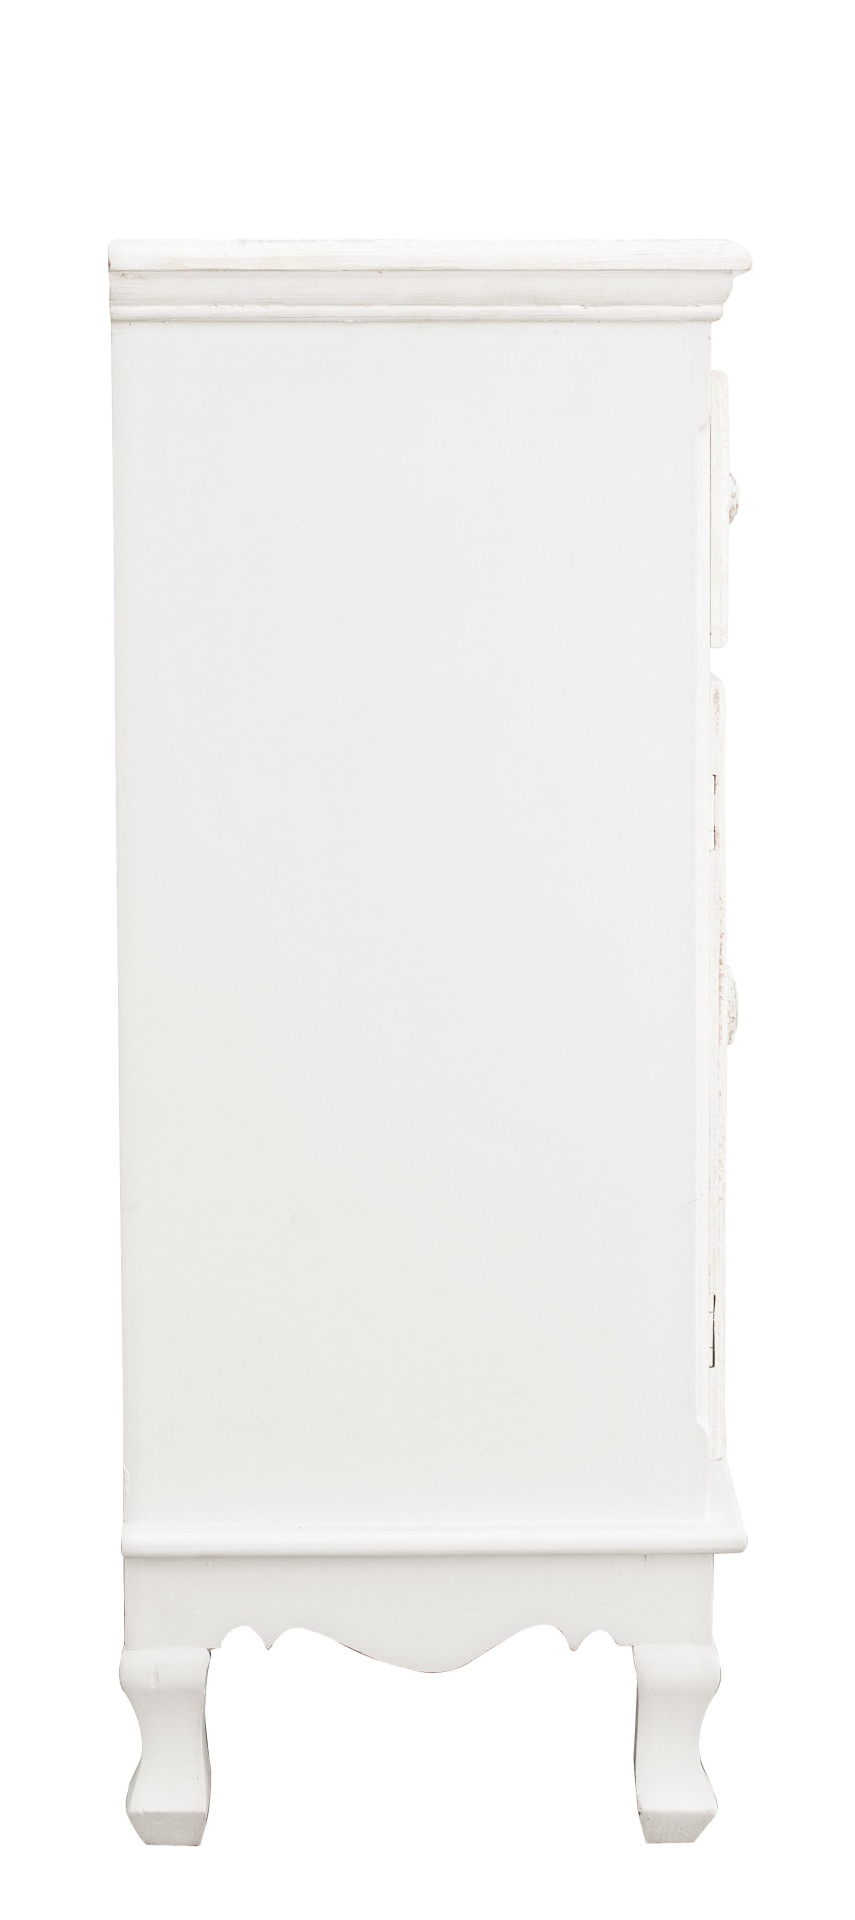 Die Kommode Clorinne überzeugt mit ihrem klassischen Design. Gefertigt wurde sie aus MDF, welches einen weißen Farbton besitzt. Das Gestell ist auch aus MDF. Die Kommode verfügt über zwei Türen und eine Schublade. Die Breite beträgt 60 cm.